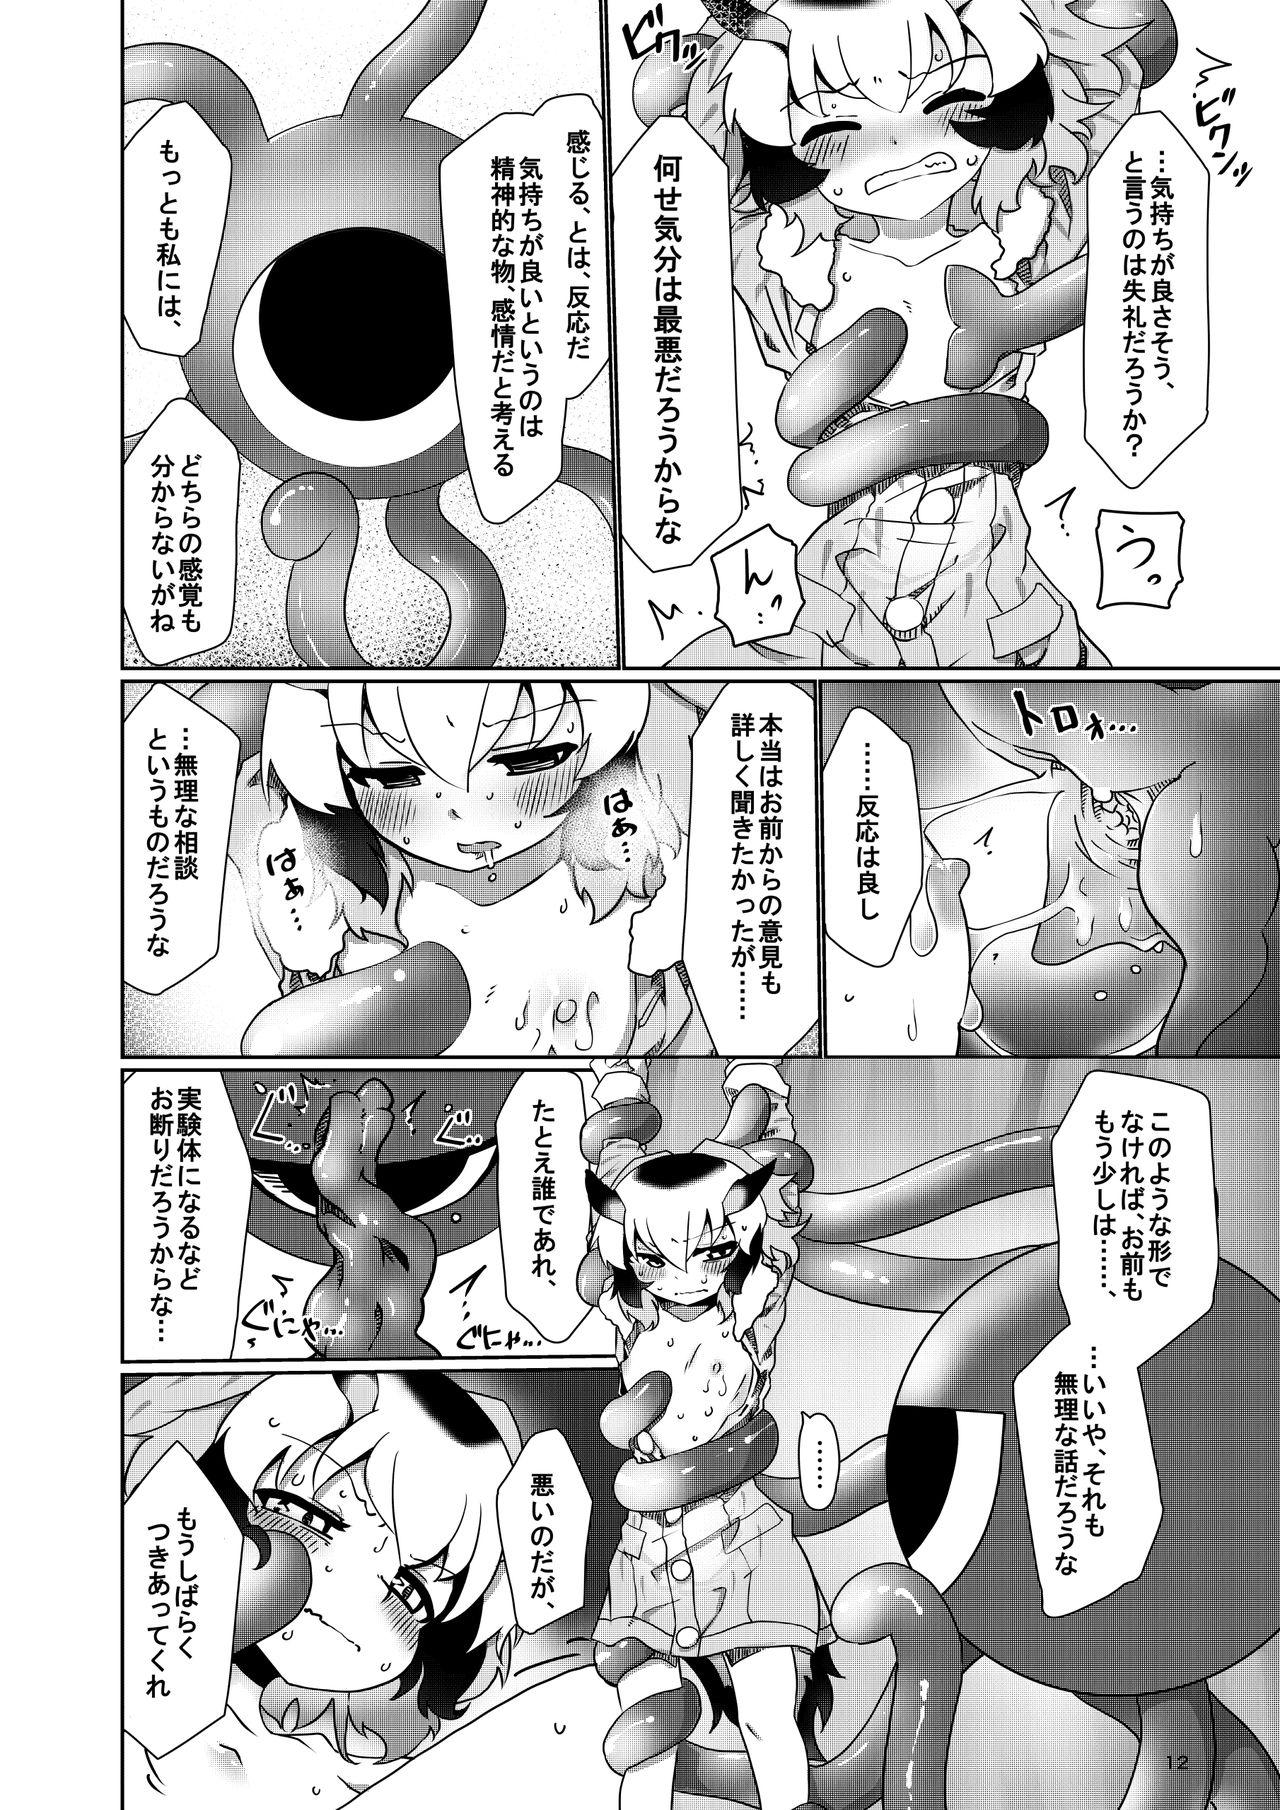 18yo APPLE WOLF 0007 Kono wa Ecchi 4 - Kemono friends Toes - Page 12